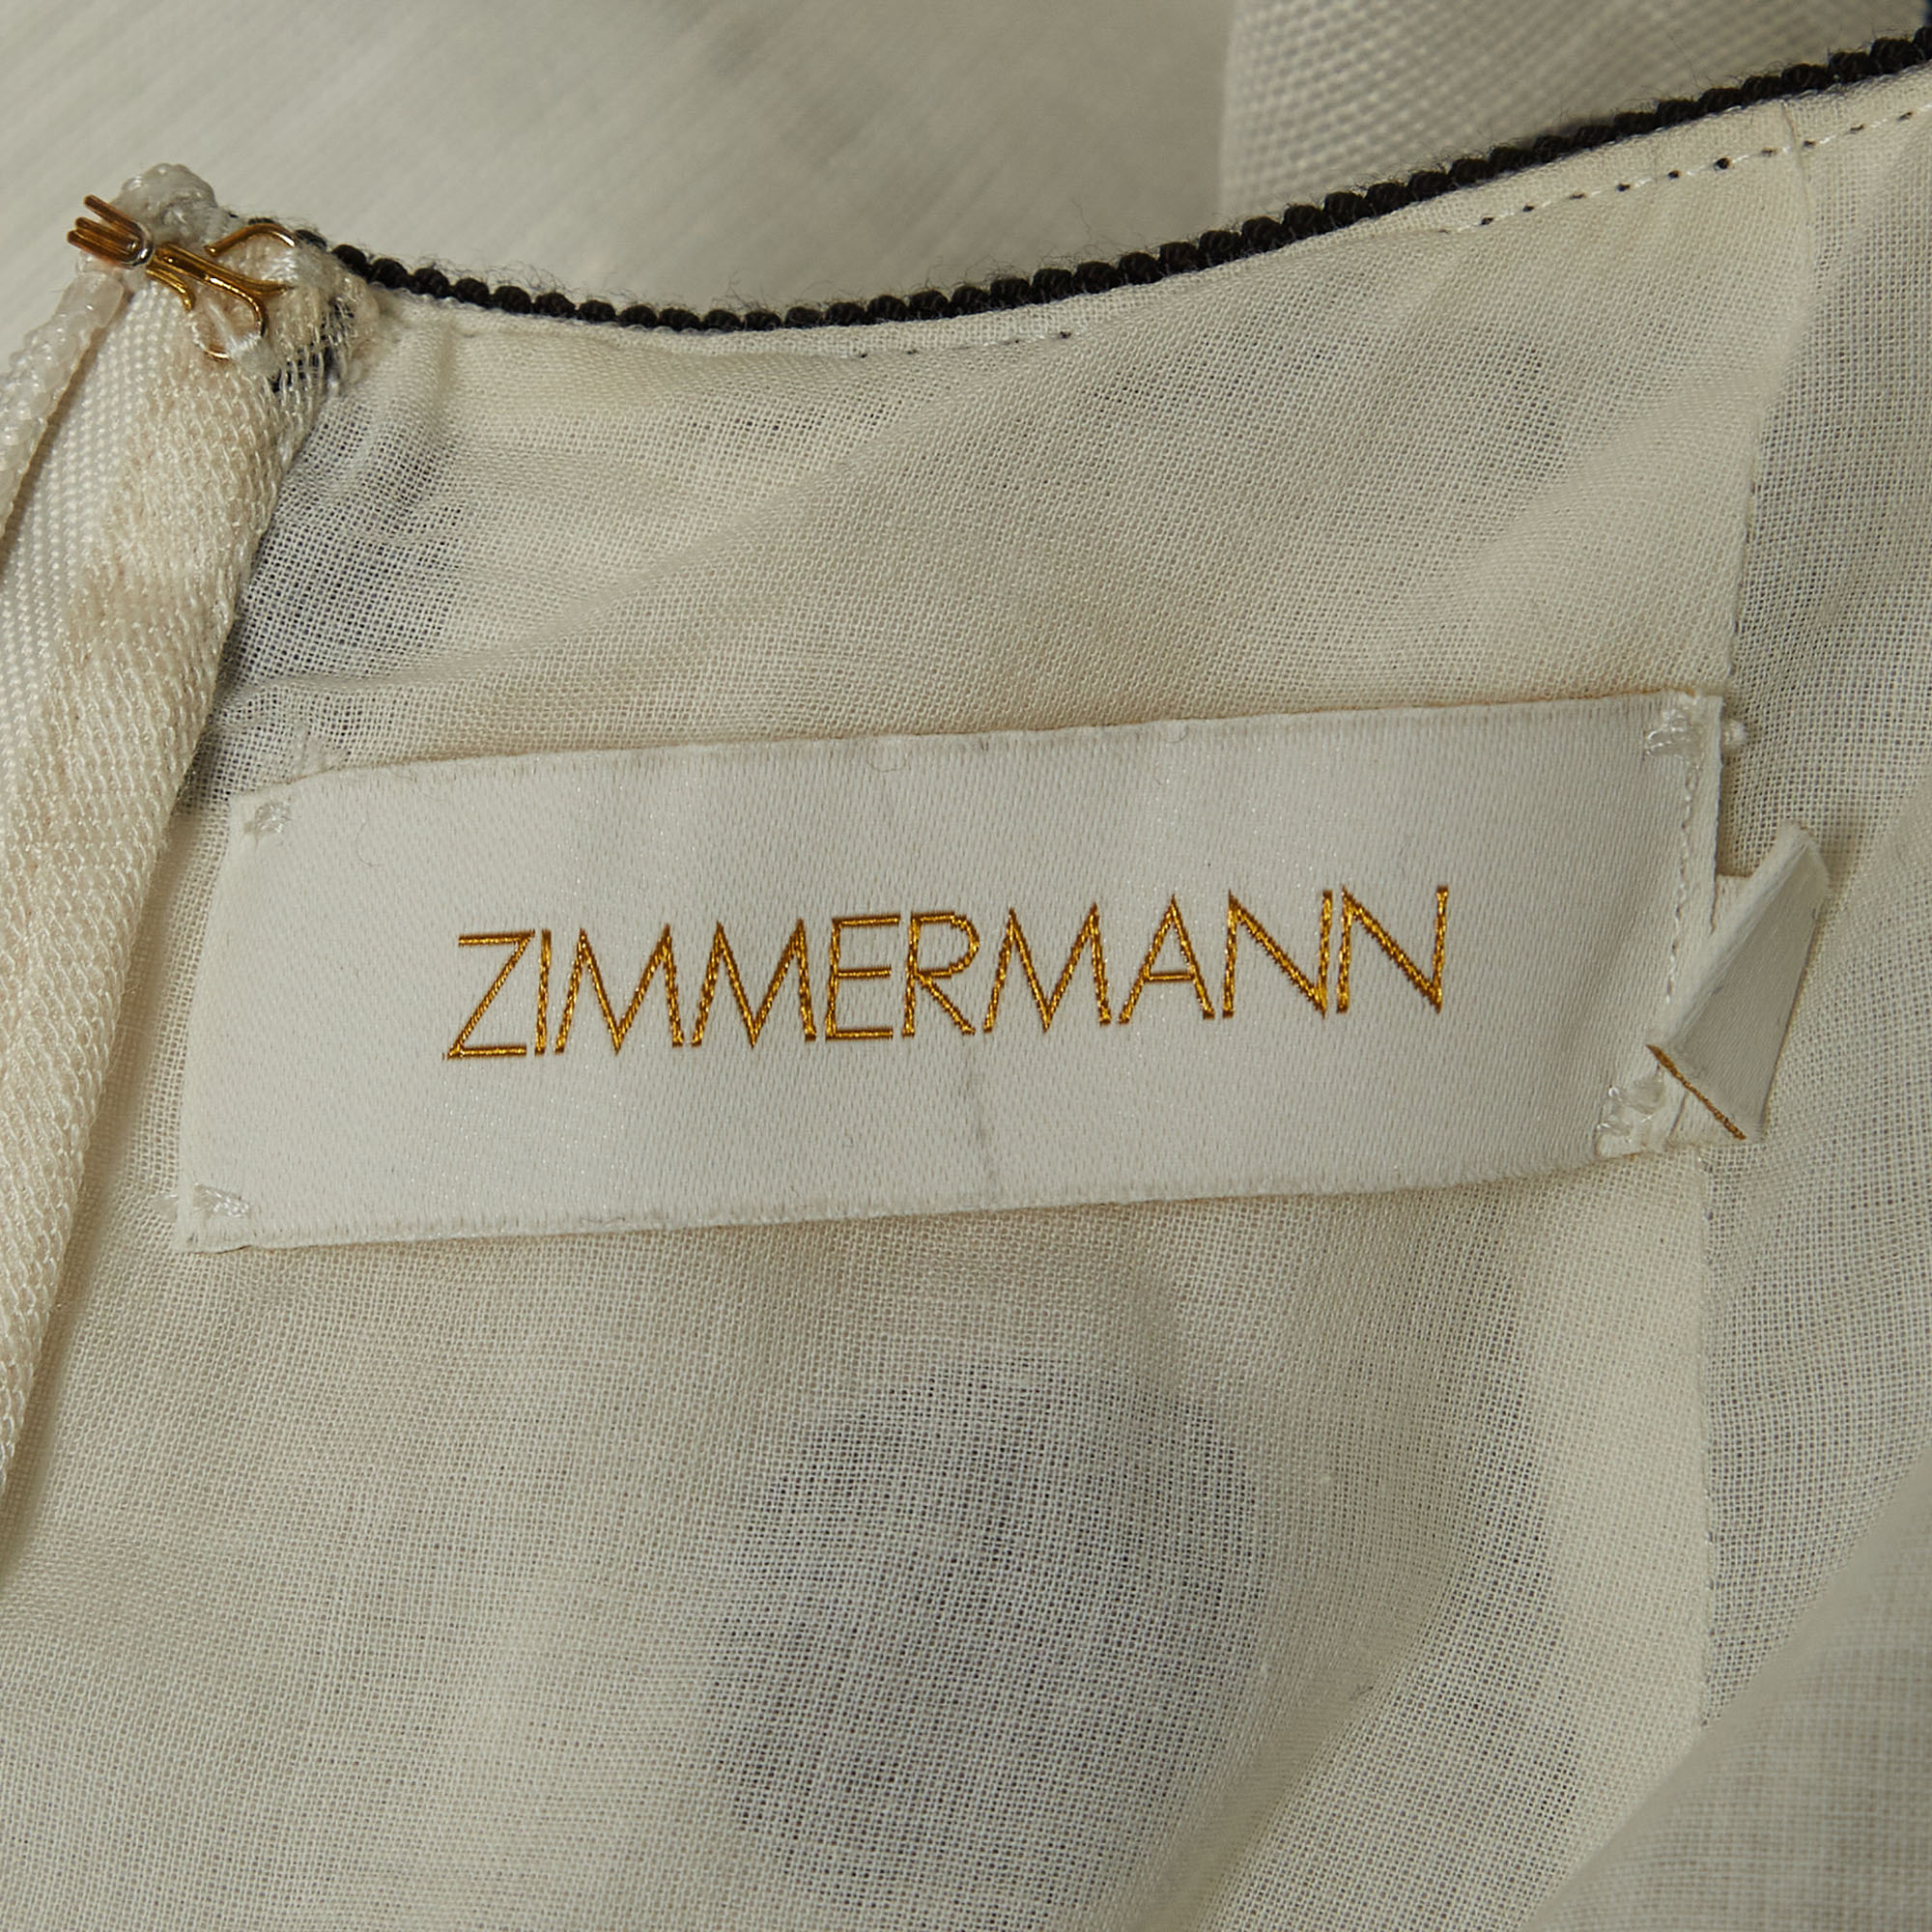 Zimmermann White/Black Polka-Dot Printed Linen Blend Frilled Mini Dress S